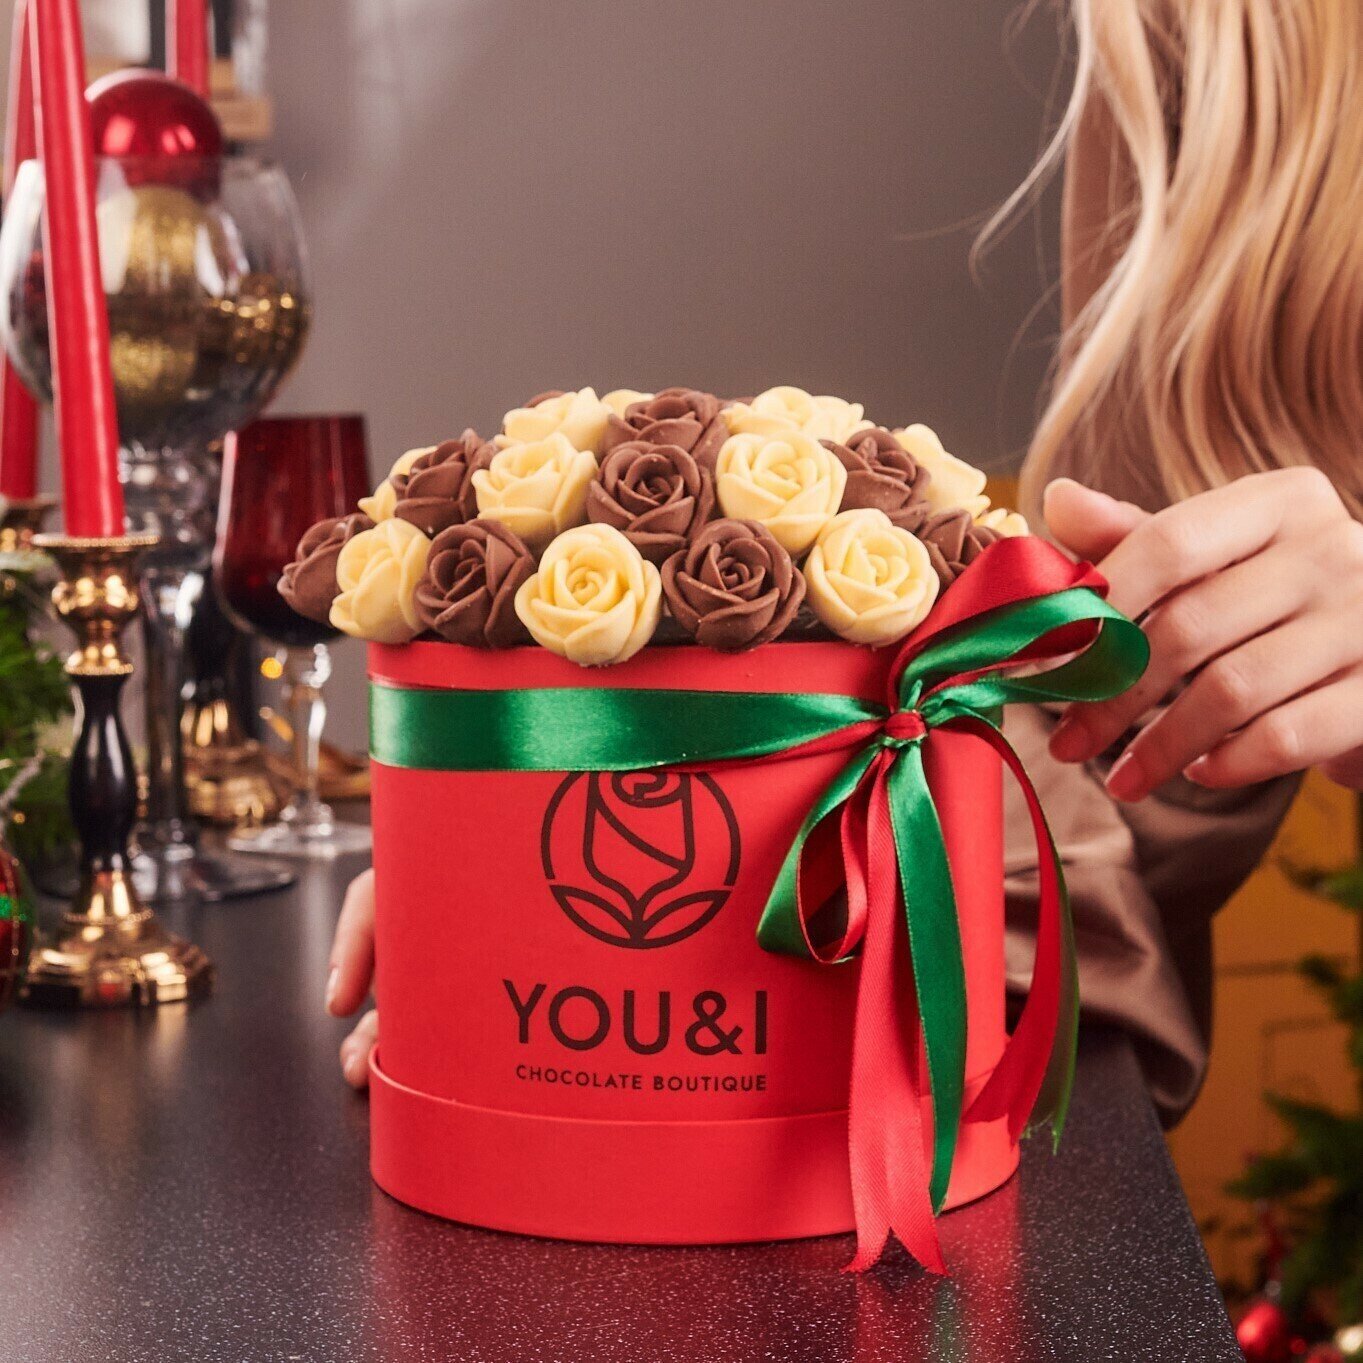 35 шоколадных роз в коробке You&i / Бельгийский шоколад / вкусный подарок